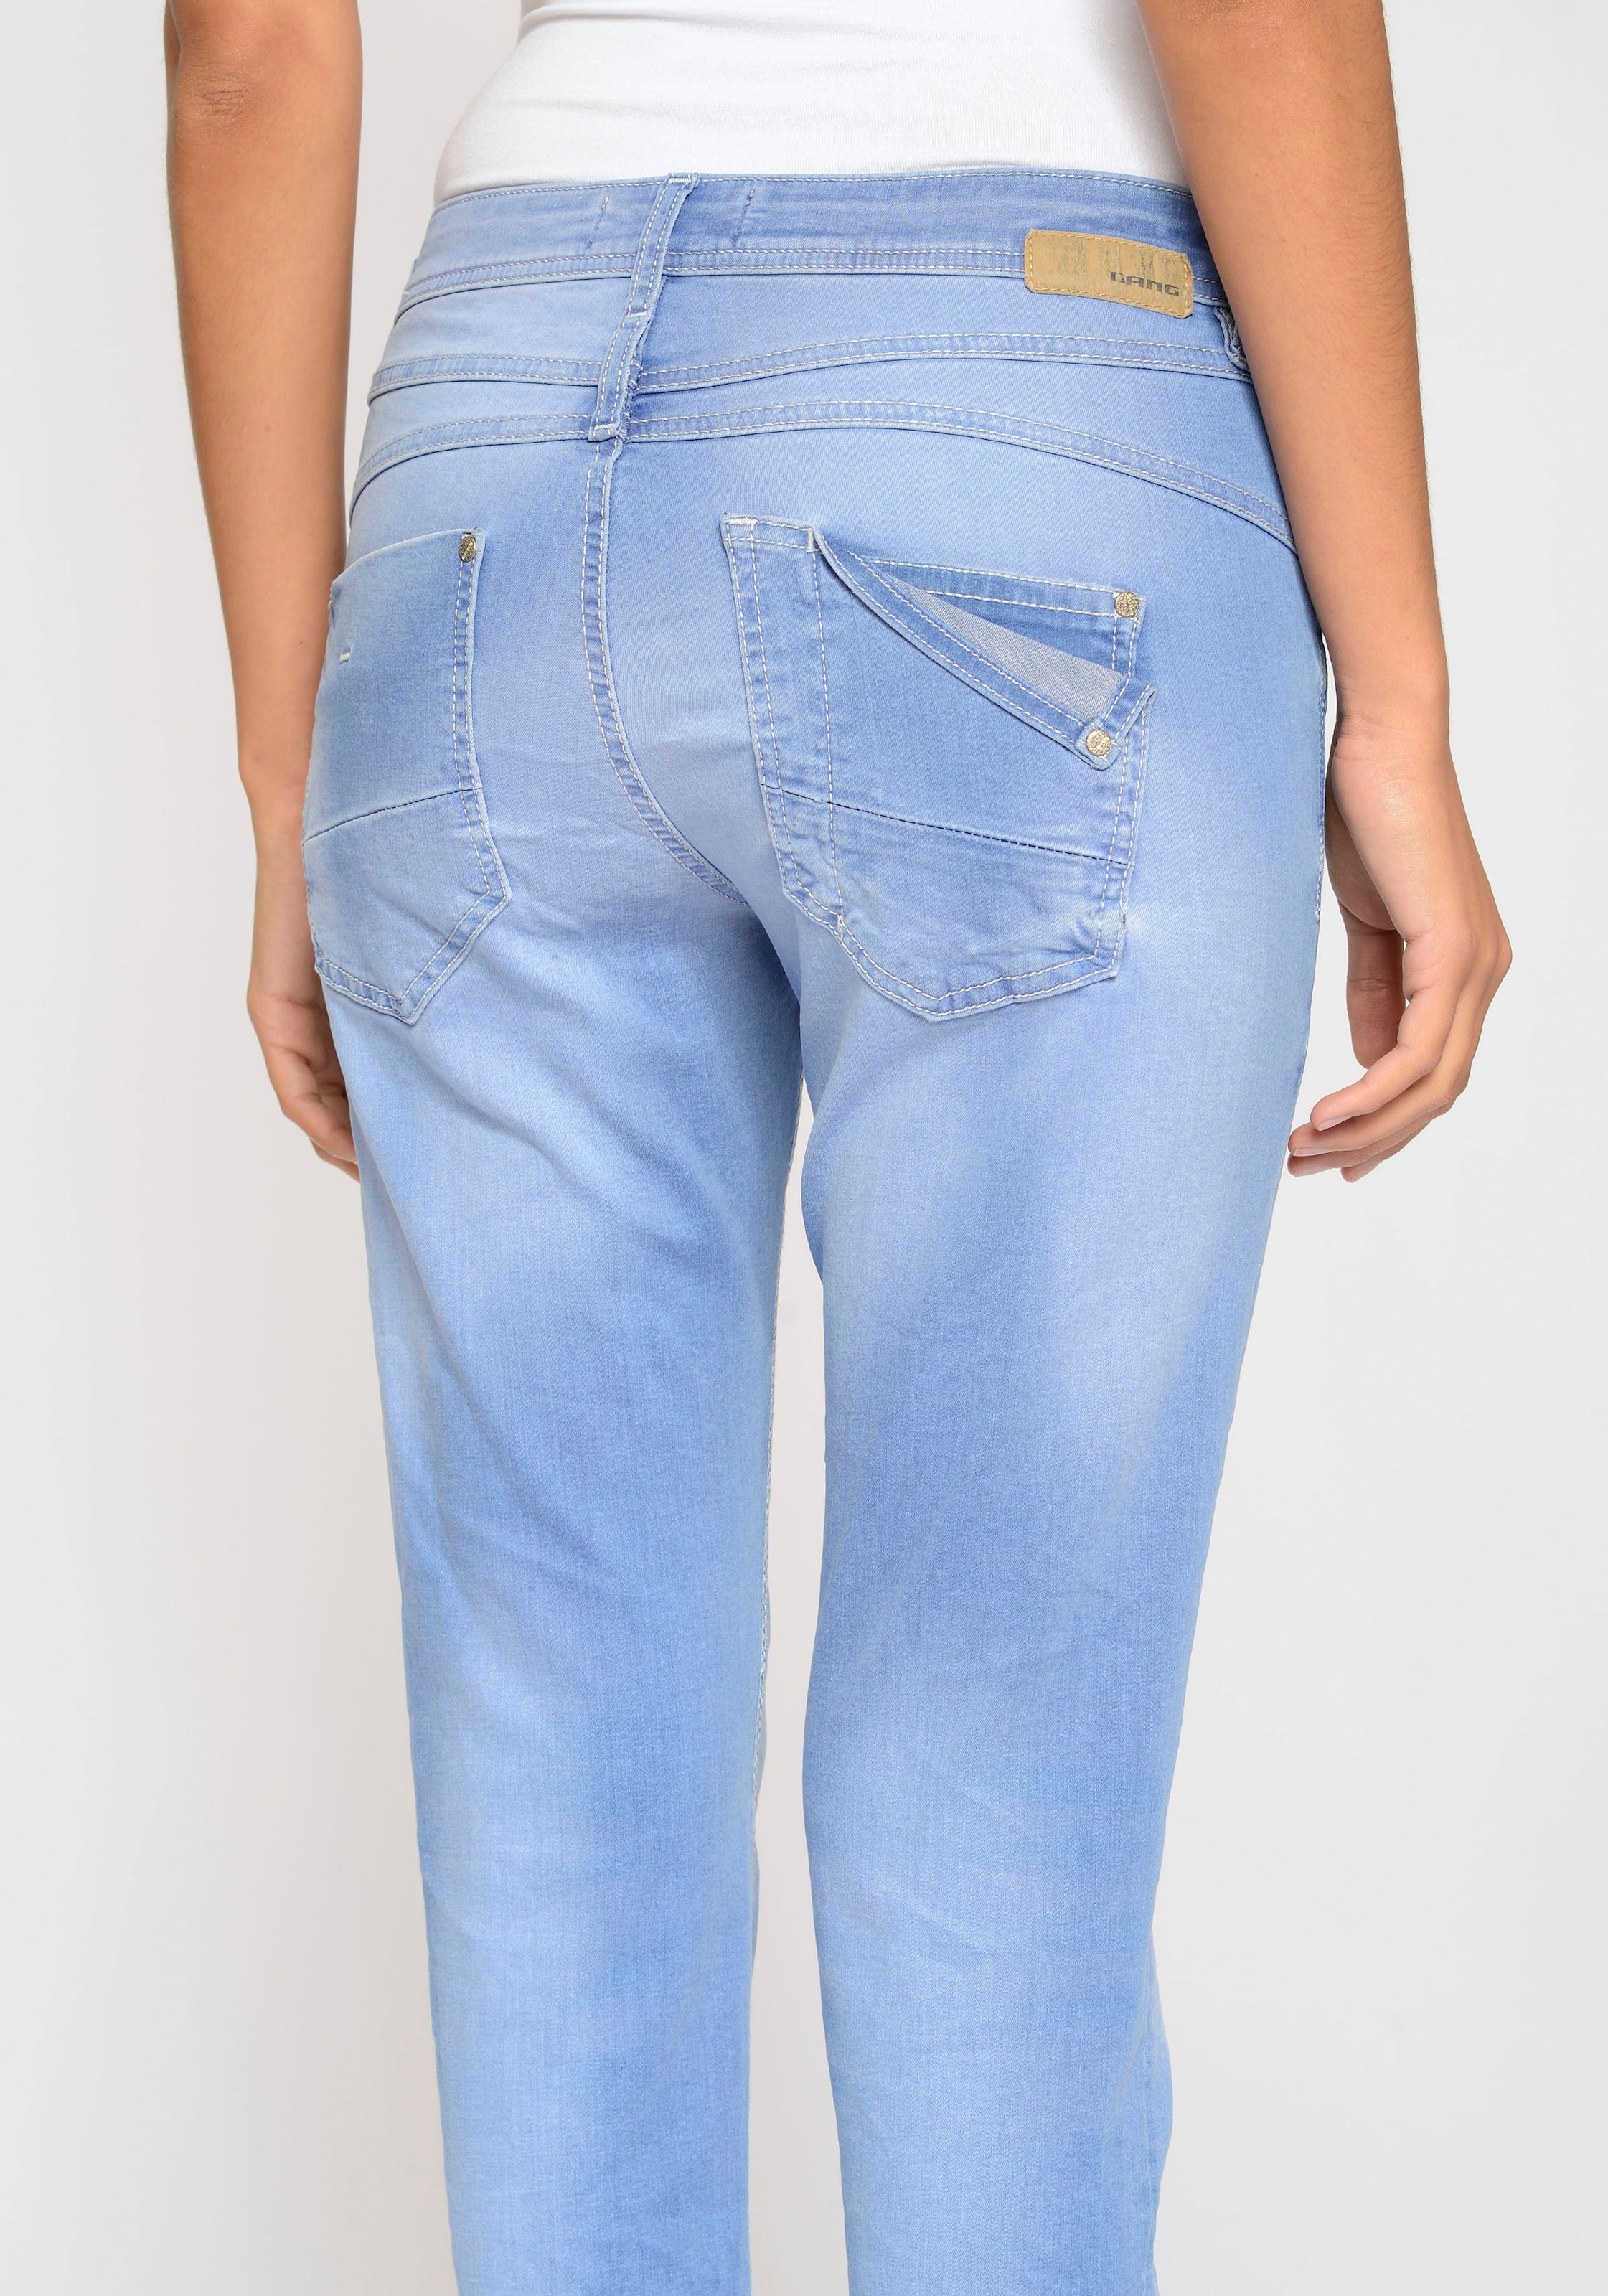 doppelter, und ♕ cropped«, Passe Relax-fit-Jeans doppelter kaufen Gesässtasche rechter mit »94Amelie GANG versandkostenfrei